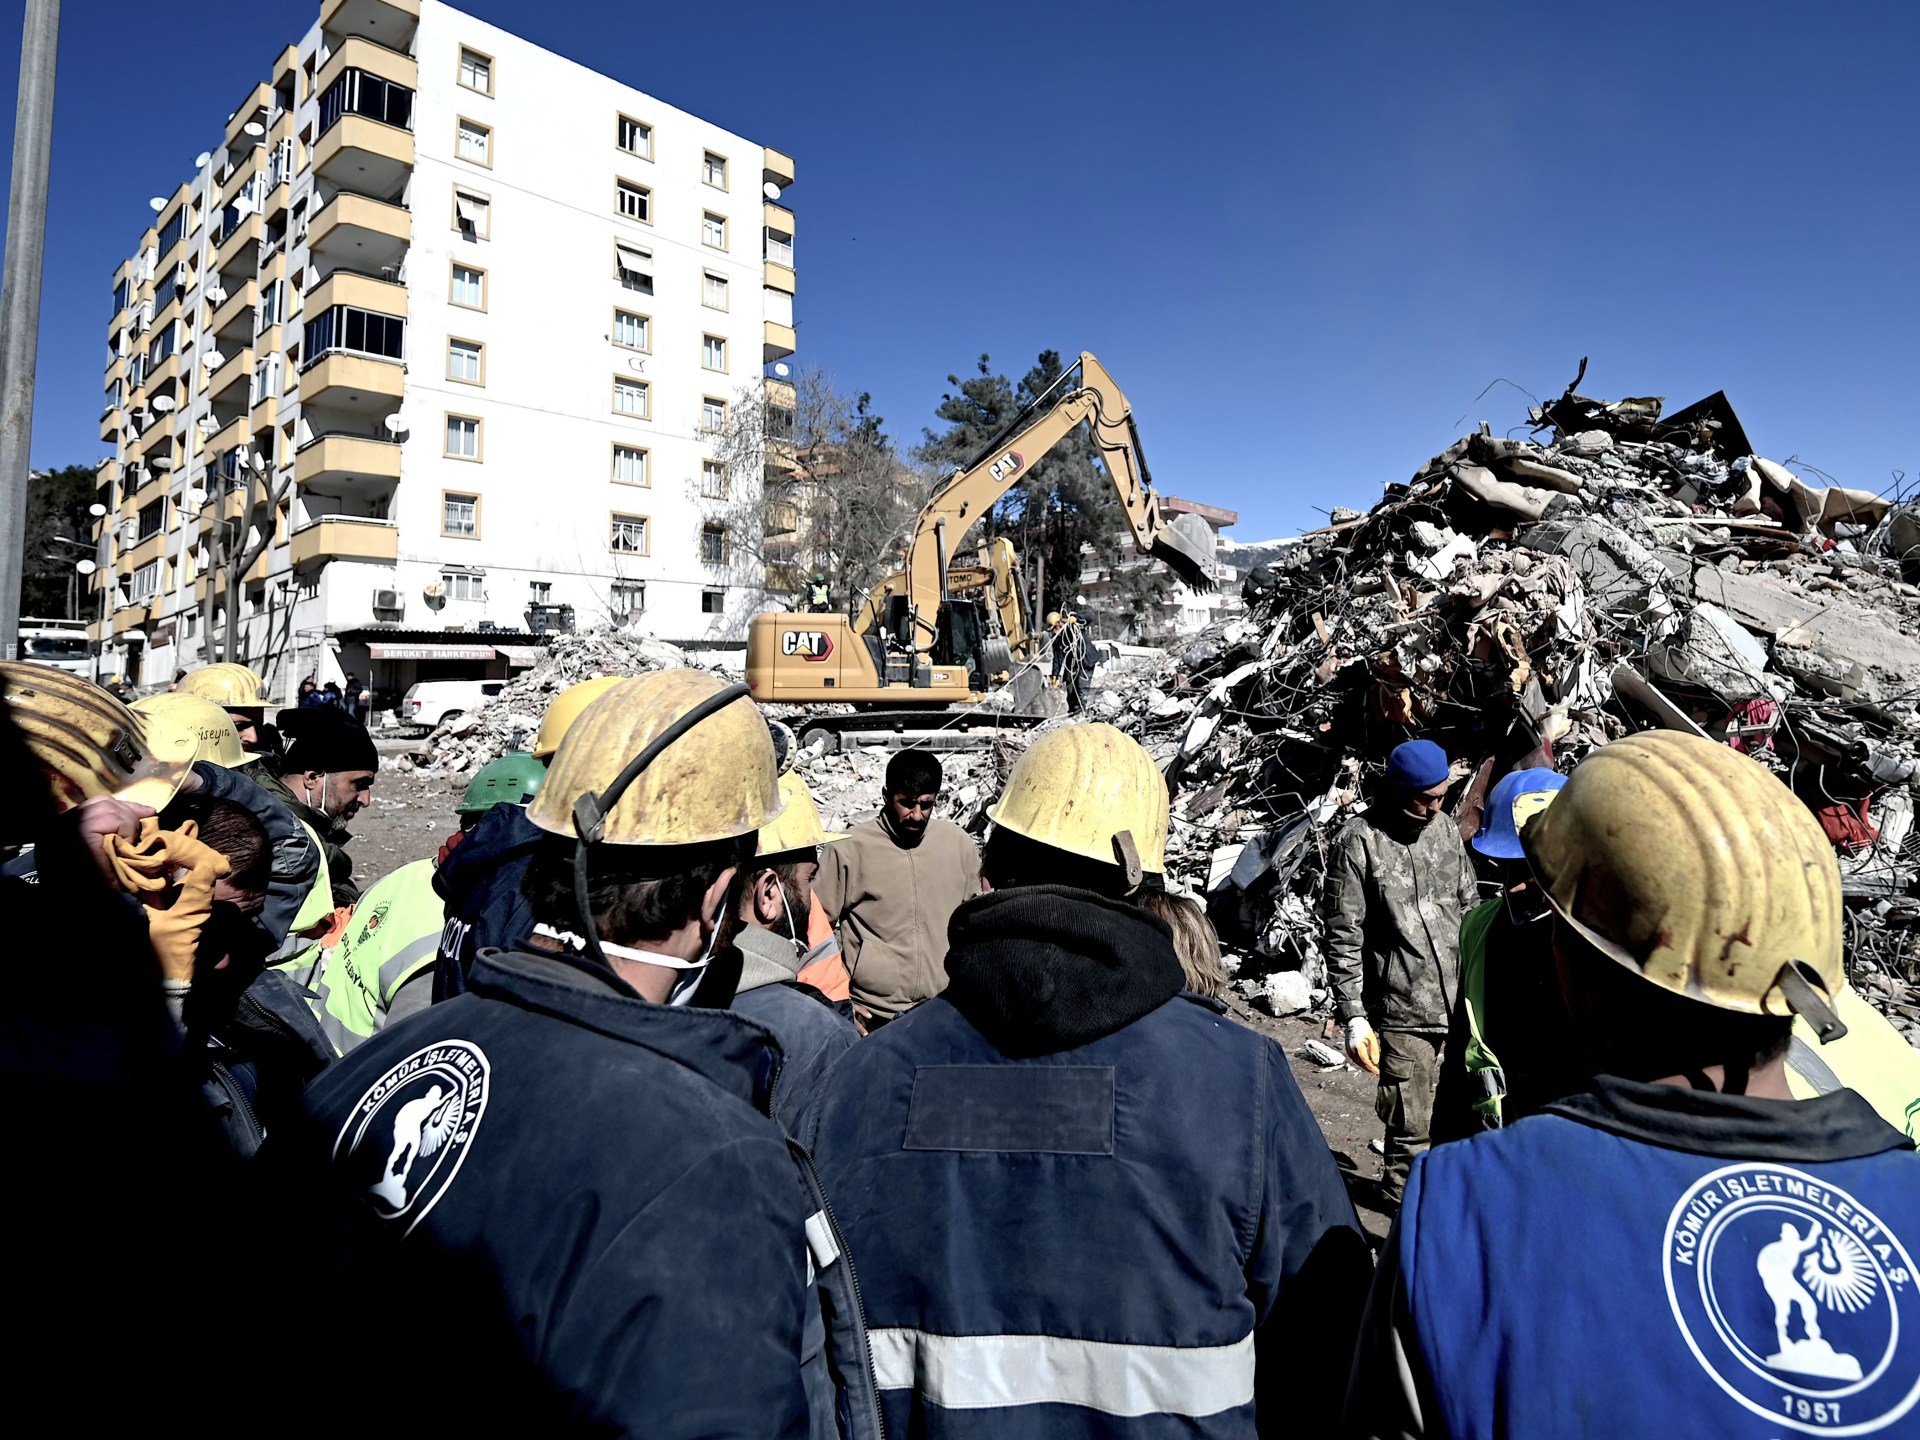 PBB meluncurkan seruan  miliar untuk operasi bantuan gempa bumi di Turki |  Berita gempa Turki-Suriah